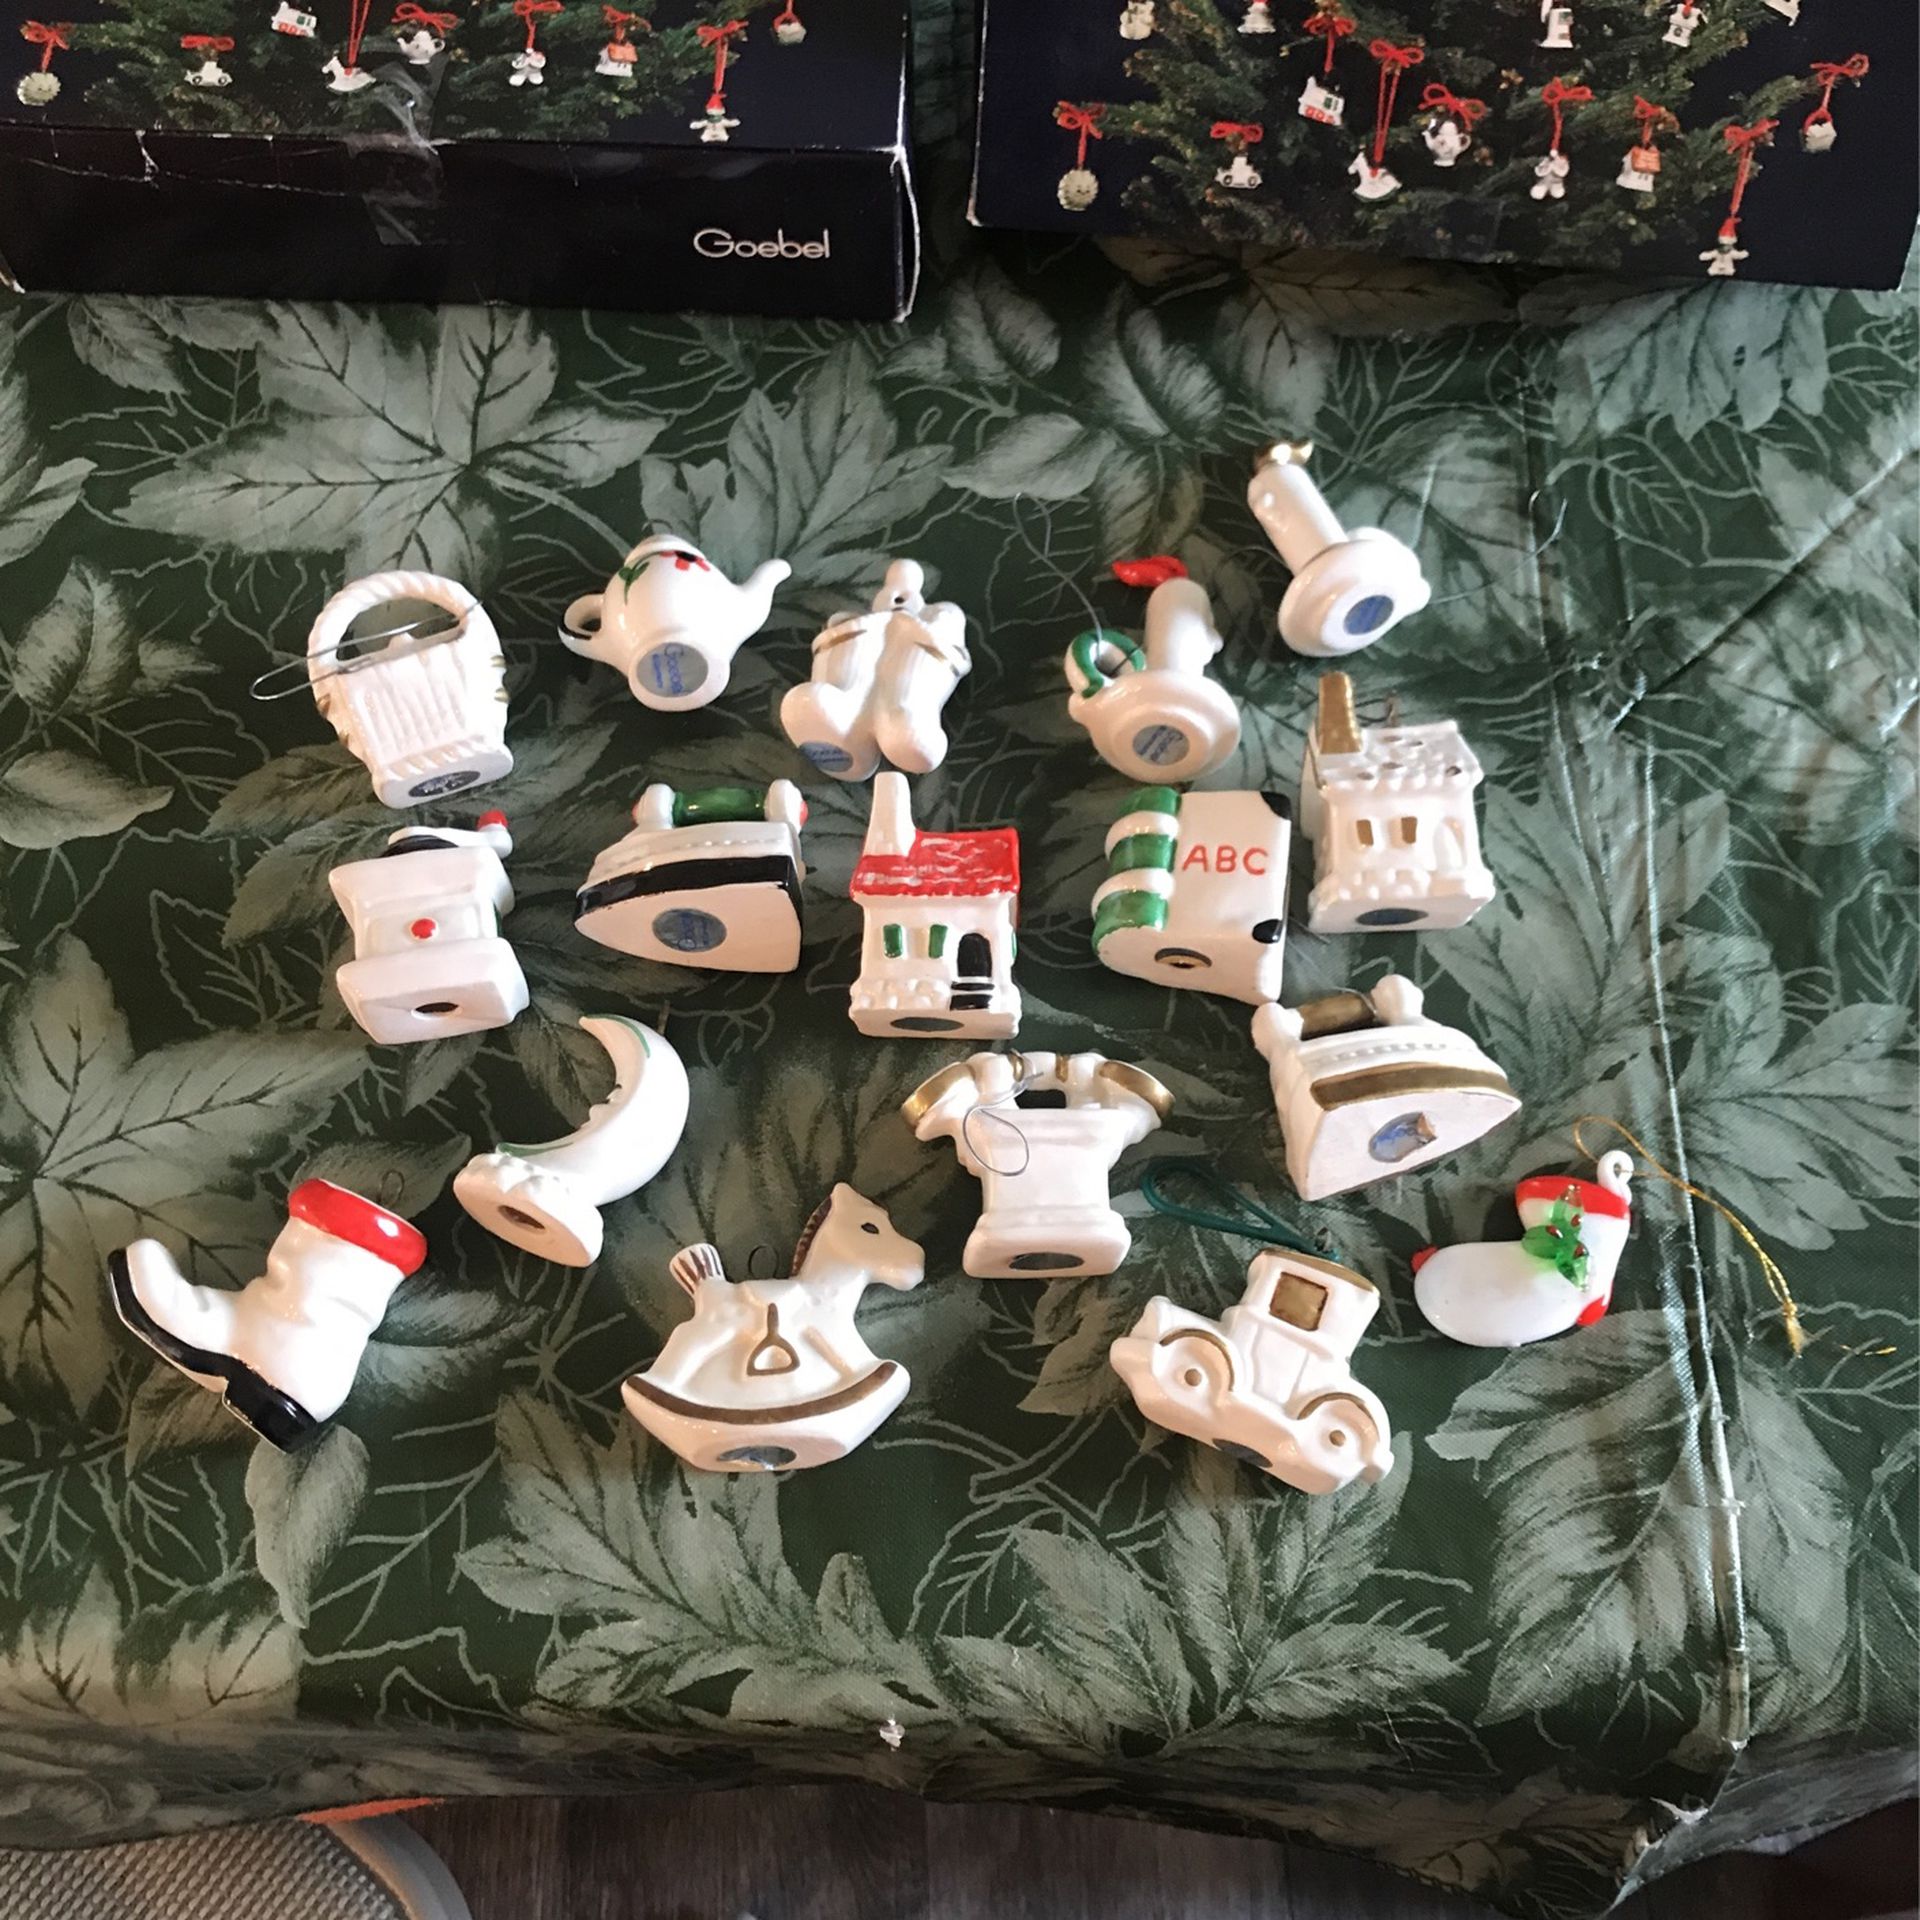 Goebel Christmas Ornaments